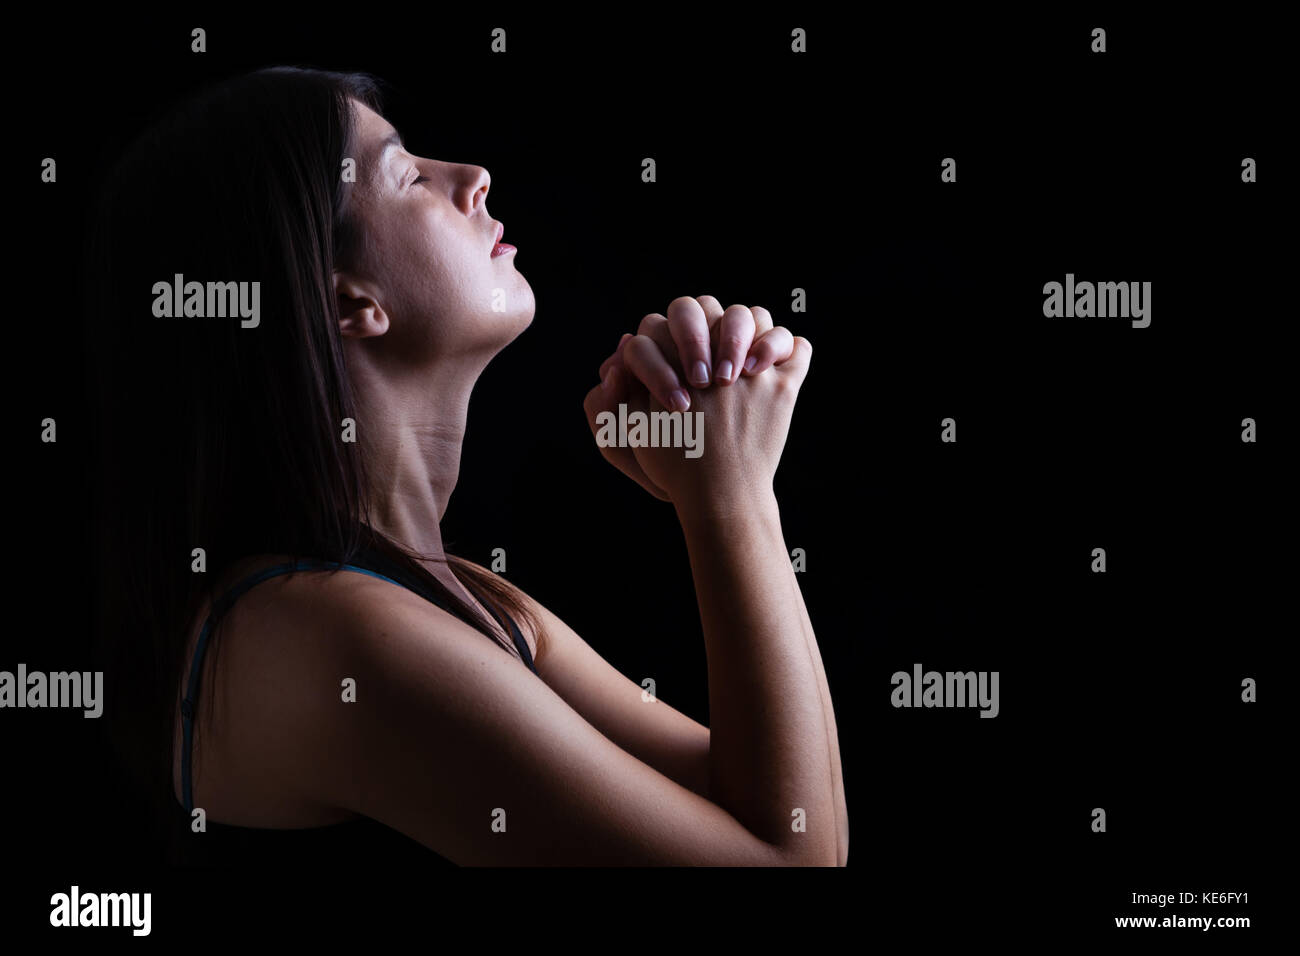 Gros plan d'une femme fidèle prier, mains jointes en prière, la tête, les yeux fermés dans l'inspiration religieuse. fond noir la prière religieuse chrétienne Banque D'Images